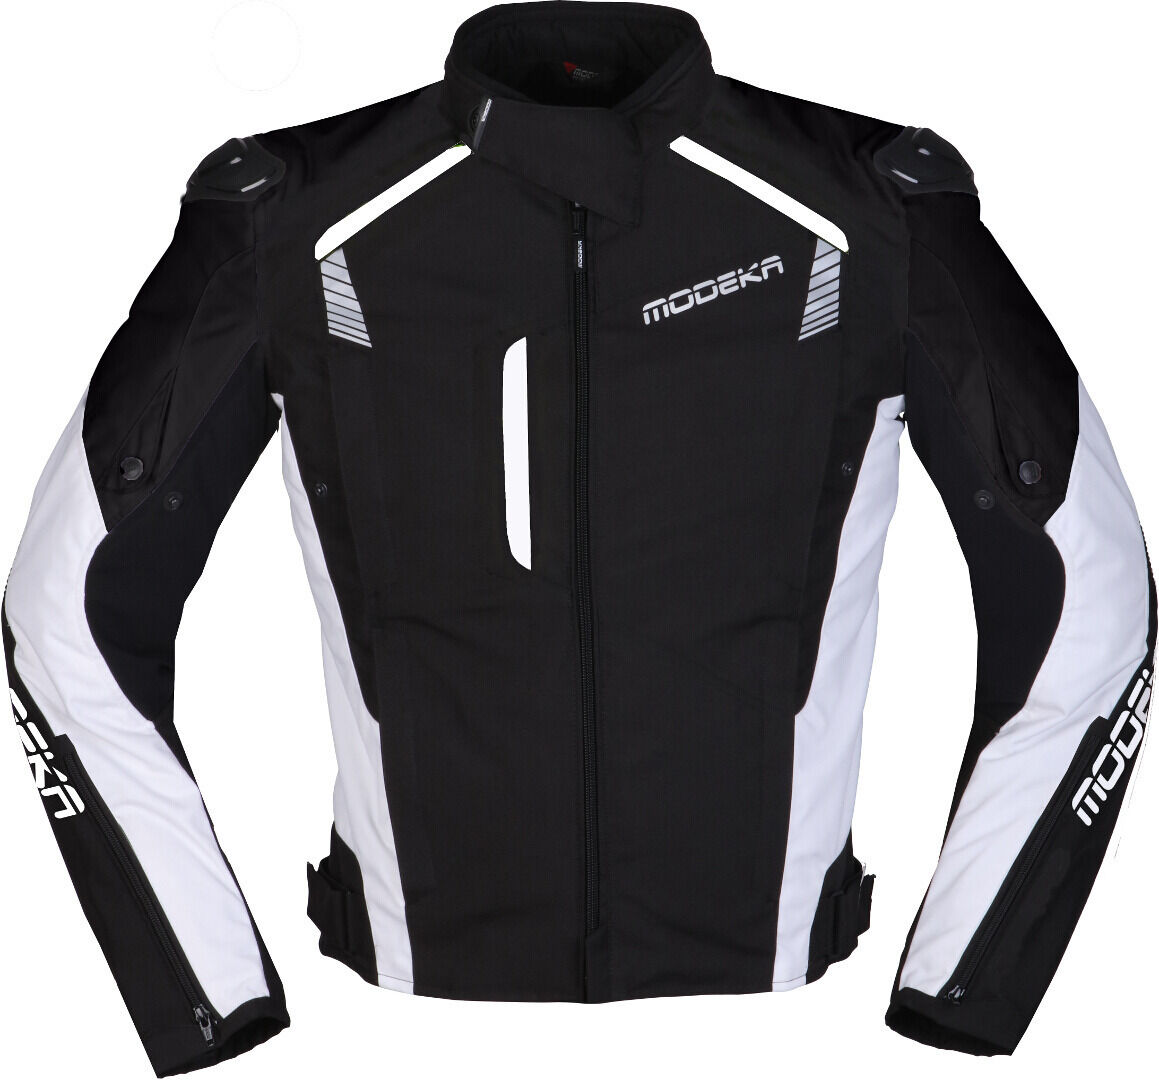 Modeka Lineos Motorcycle Jacket  - Black White